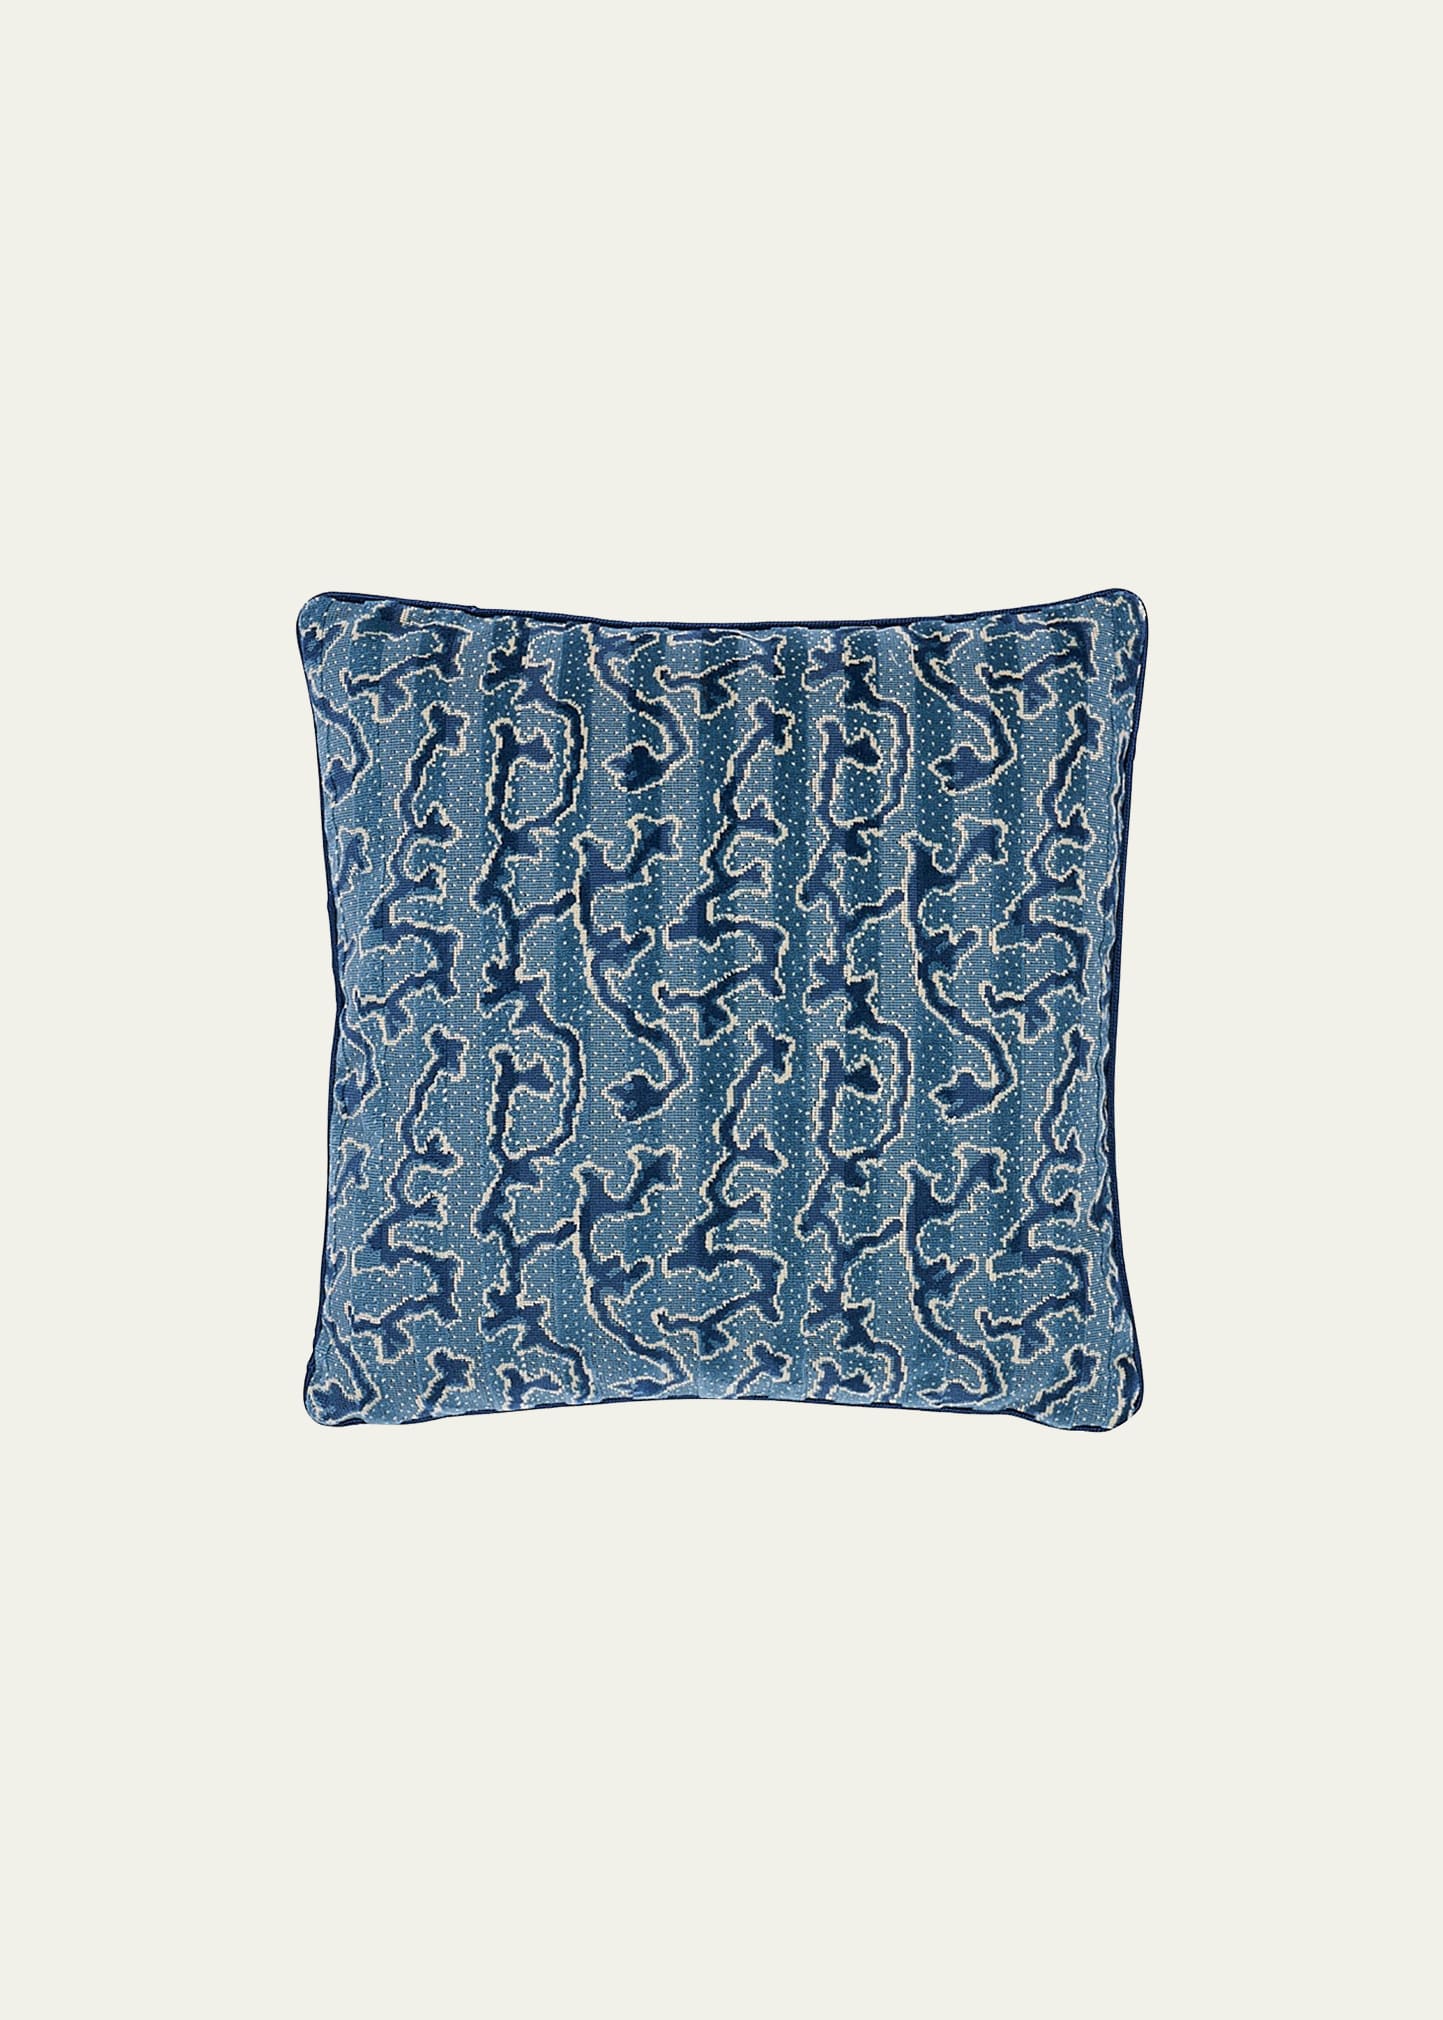 Schumacher Corail Velvet Pillow, 22"sq. In Blue